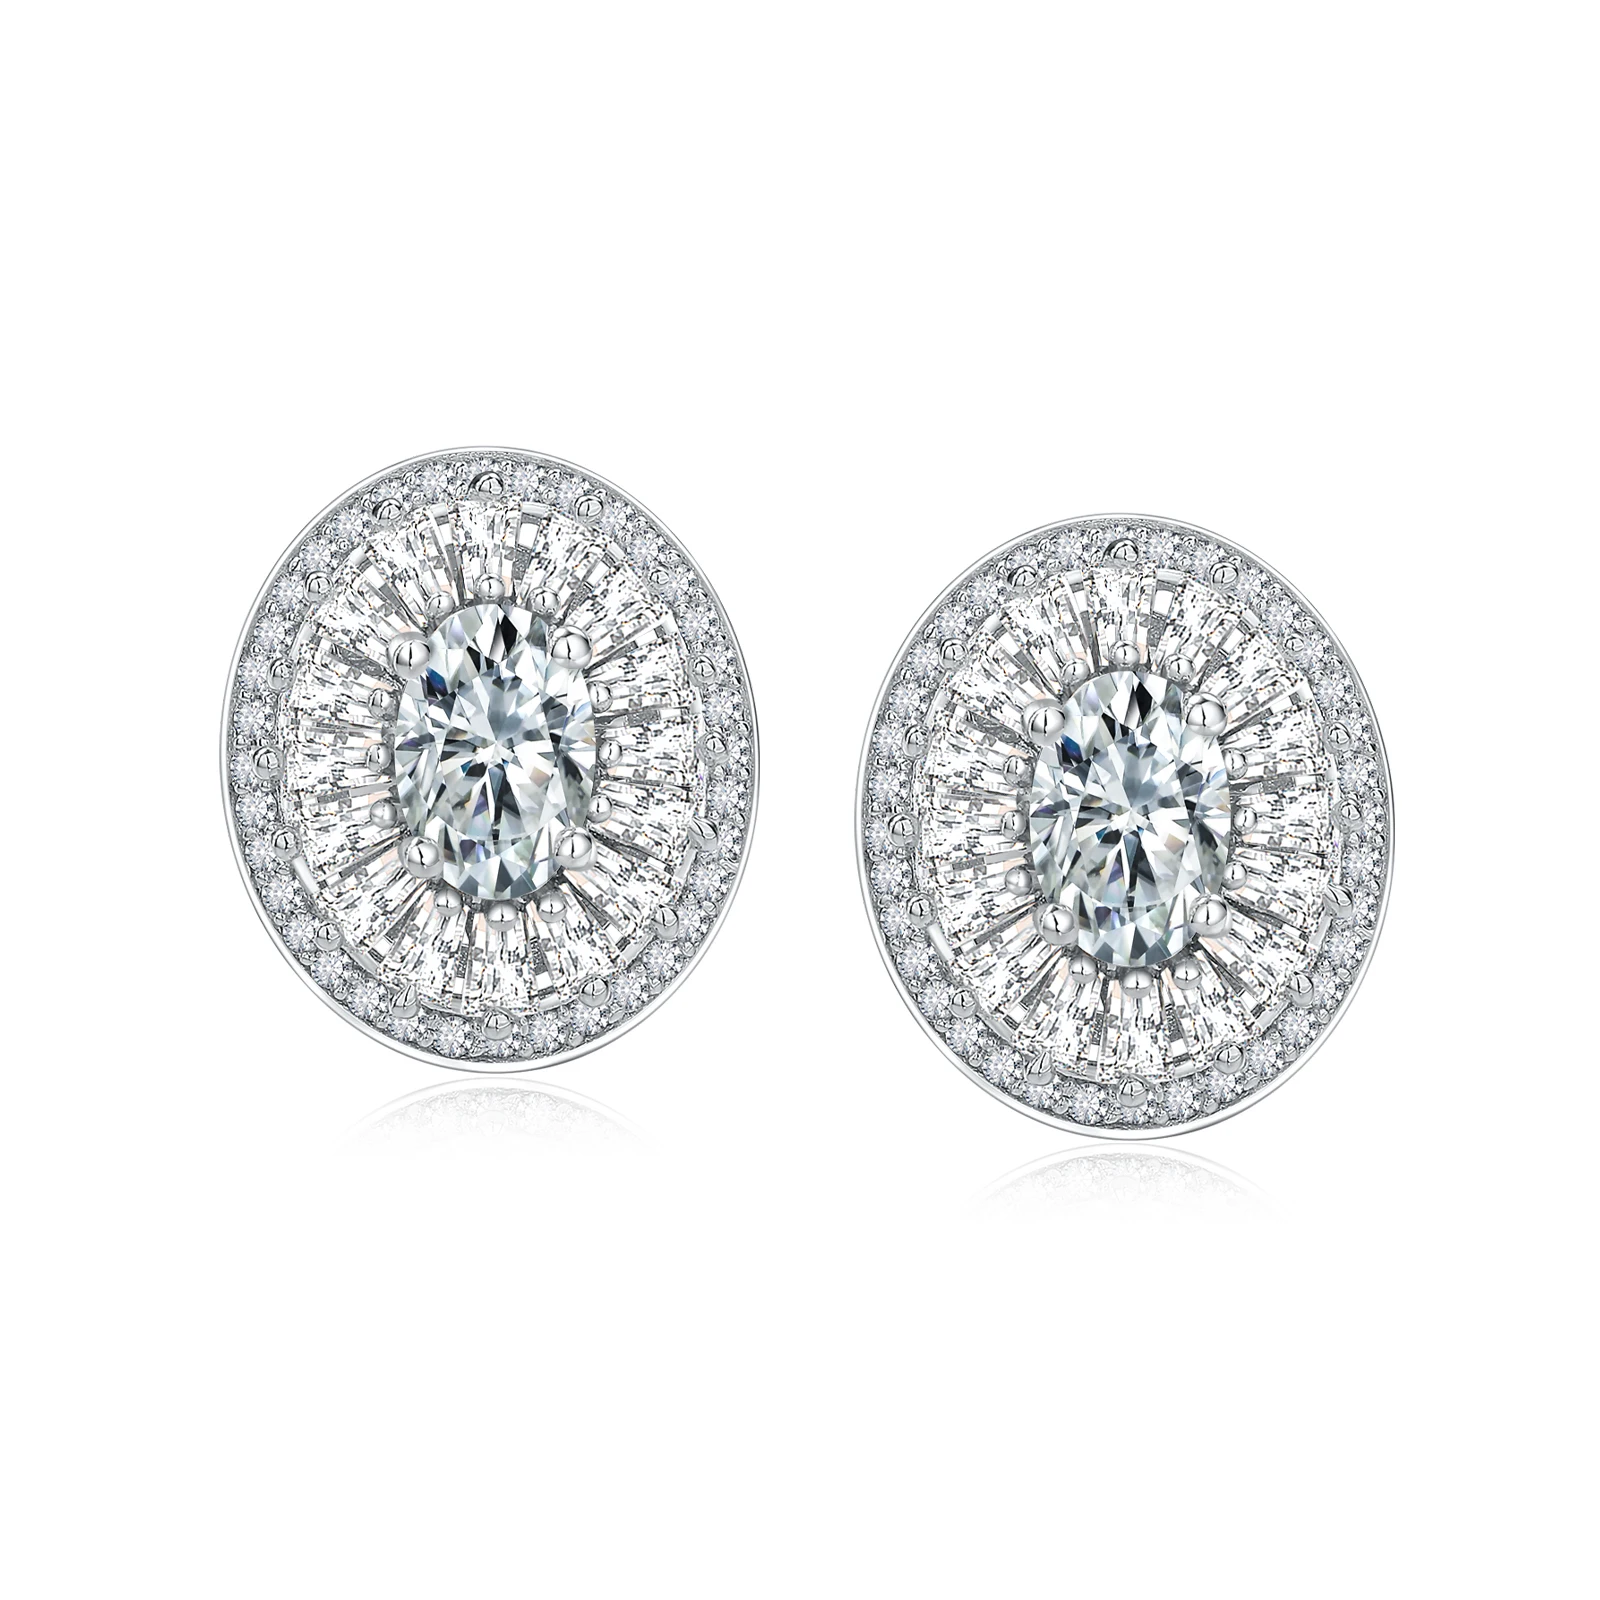 

SEASKY 925 Sterling Silver Moissanite Earrings for Women 1.8ct D Color Oval cut Sparkling VVS1 Wedding Earrings Fine Jewelry